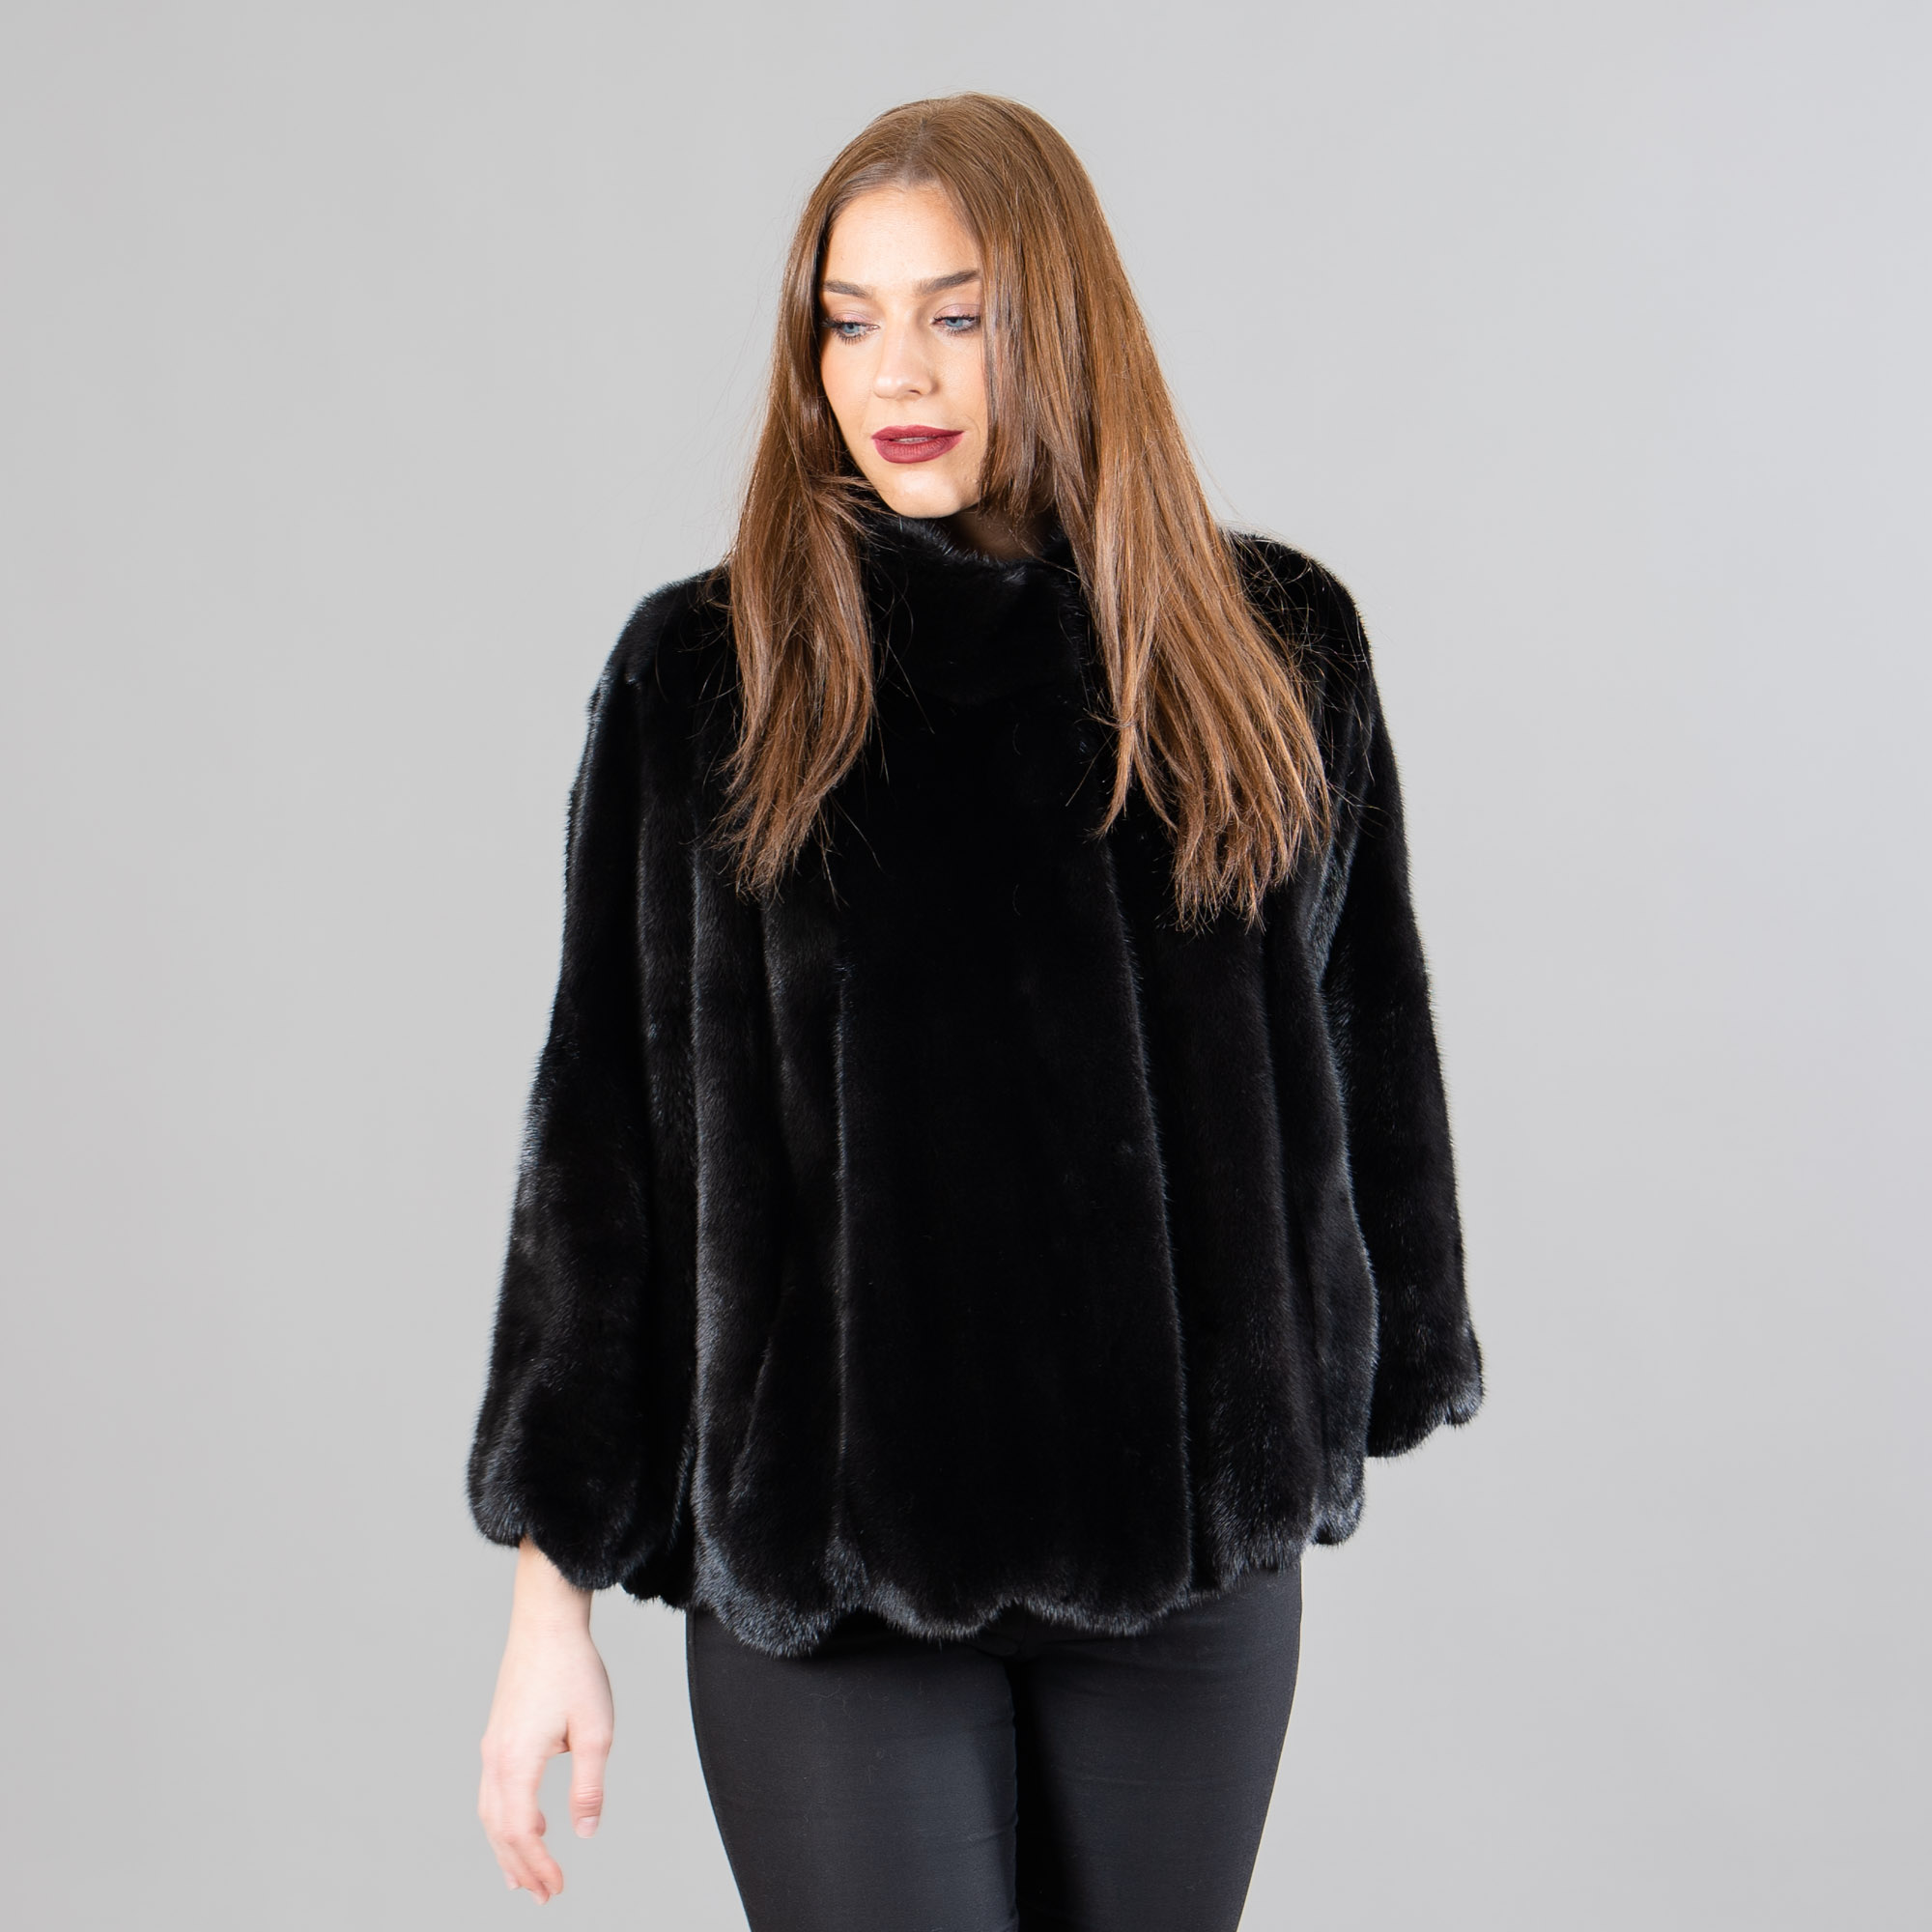 Mink fur jacket in black color